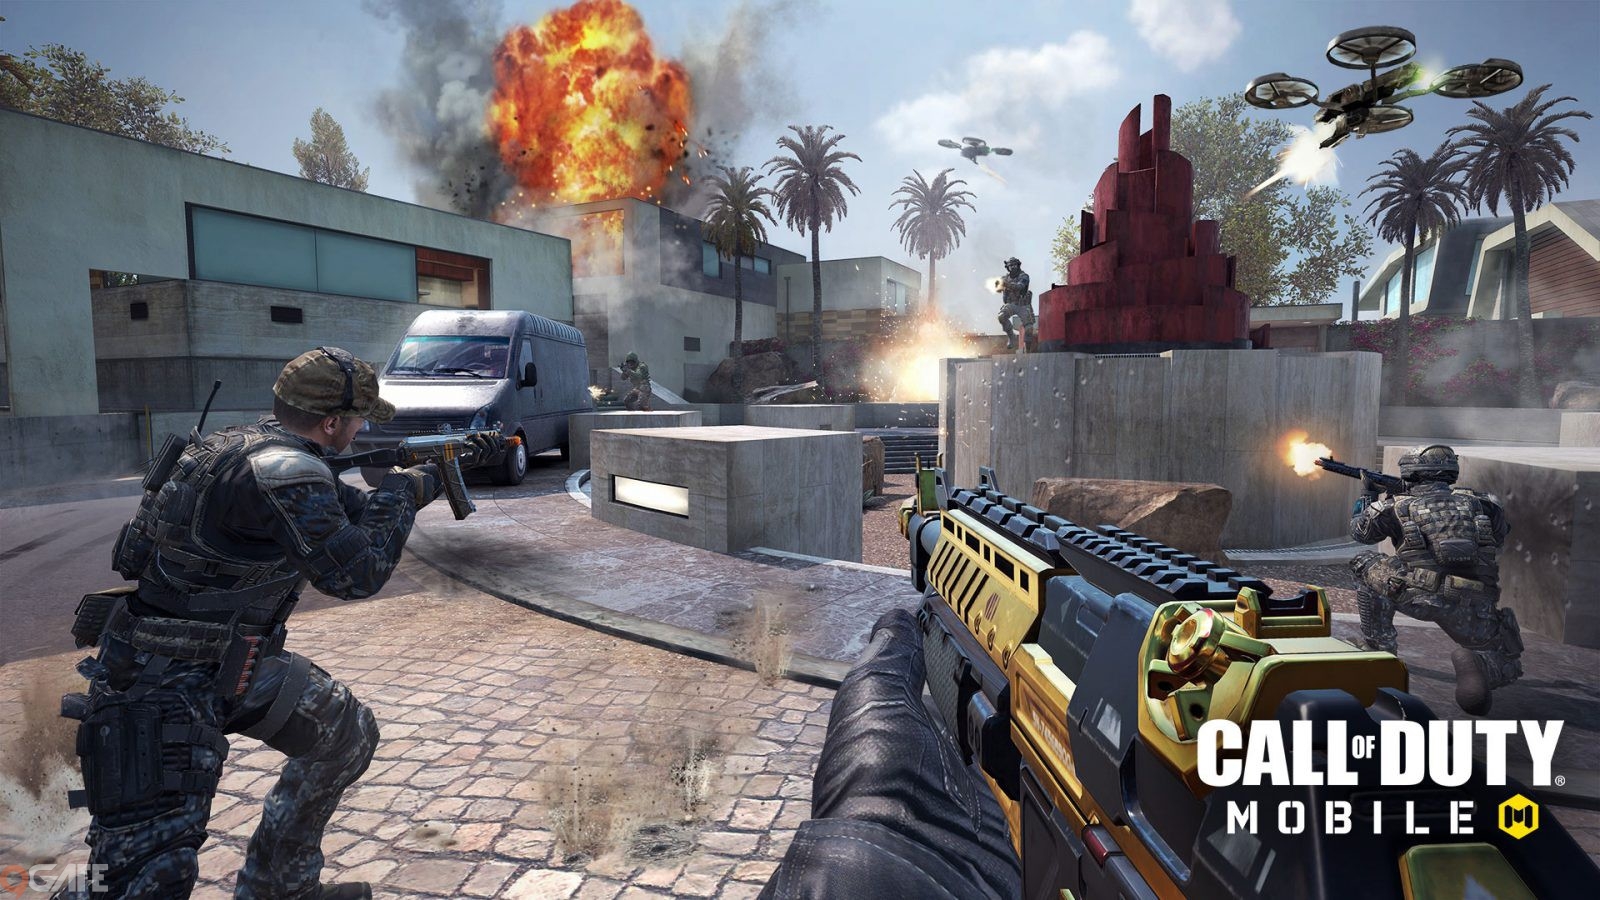 Với năm loại súng này, game thủ sẽ không “ngán” bất kỳ ai, thậm chí “đấm phát” đi luôn trong Call of Duty: Mobile VN